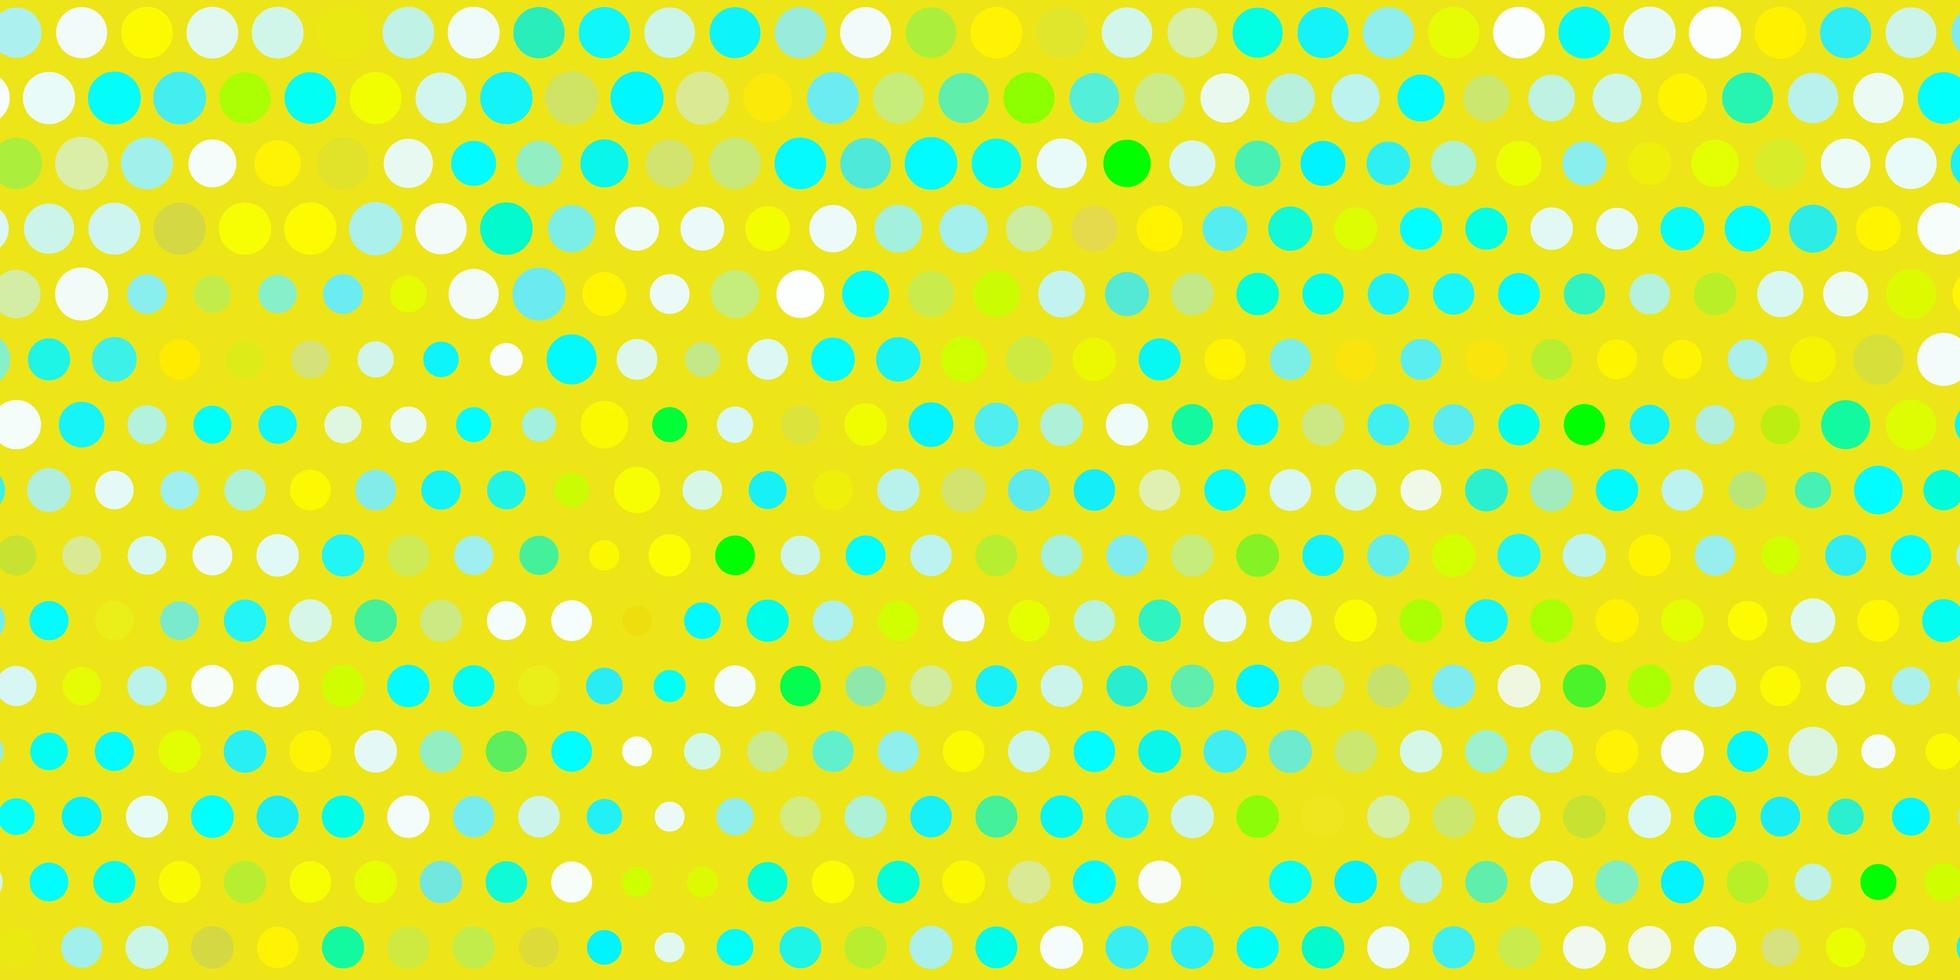 ljusblå, gul vektormall med cirklar. vektor